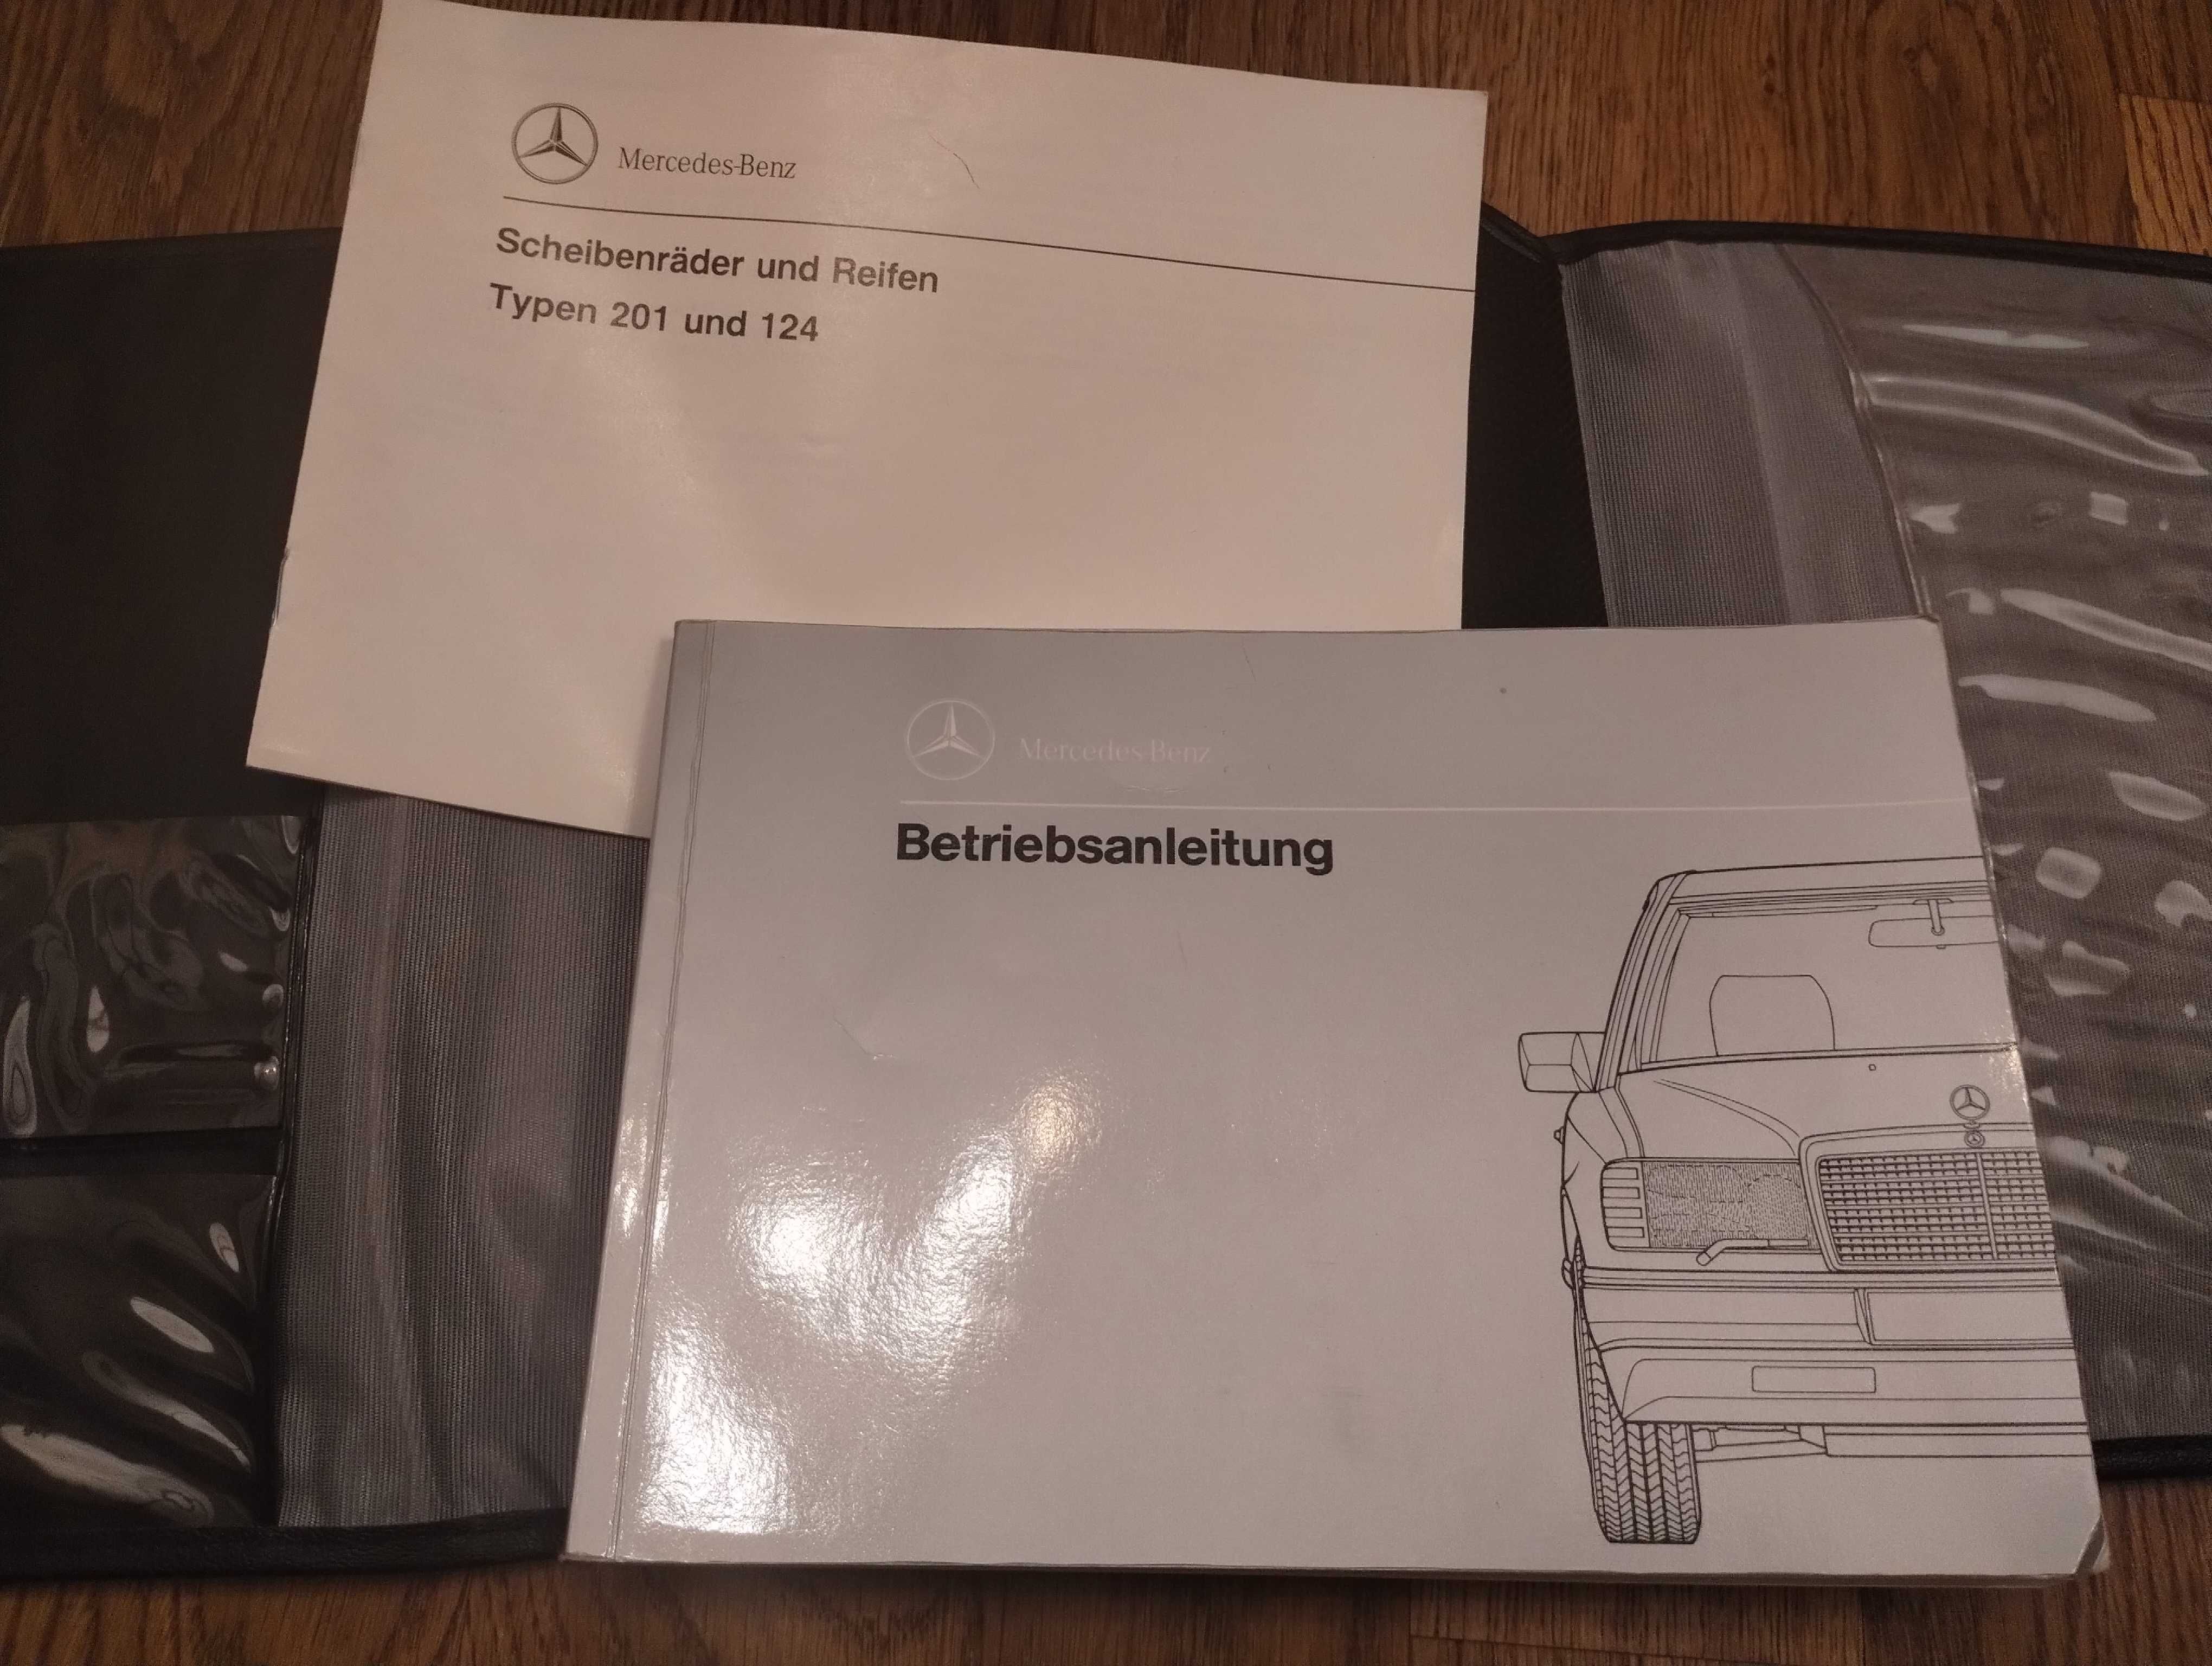 Instrukcja z etui Mercedes-Benz Diesel po niemiecku